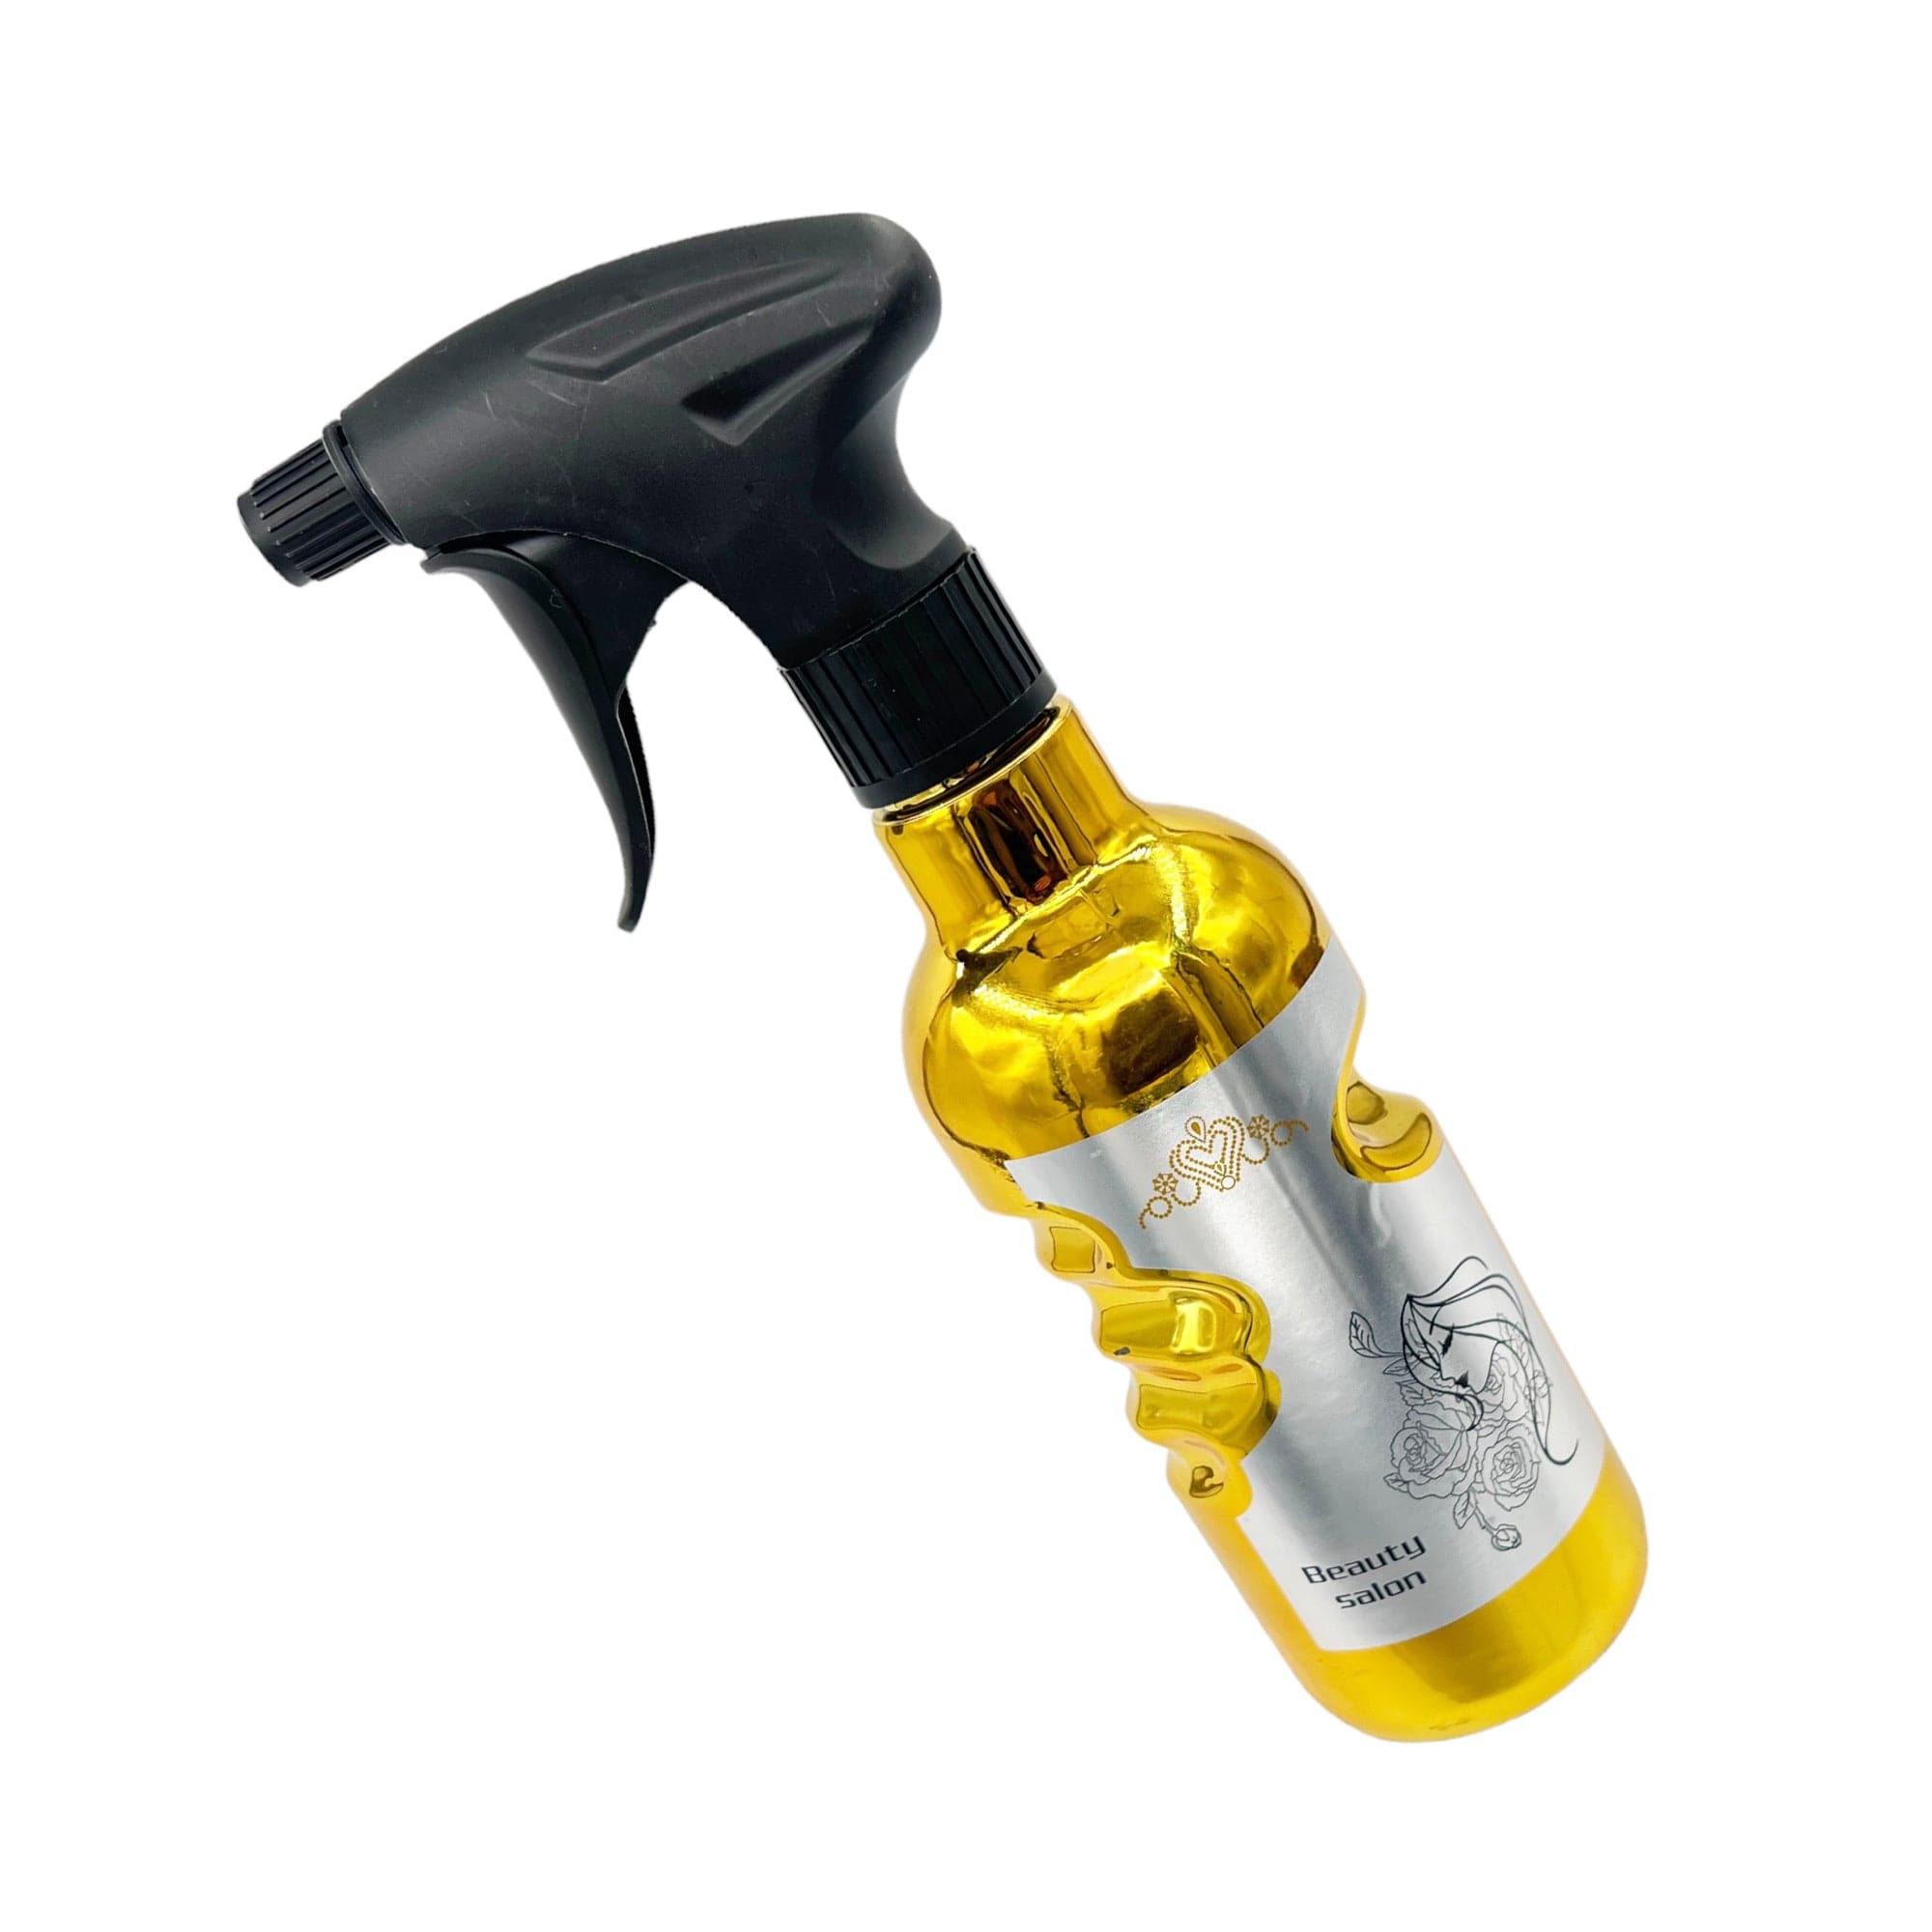 Eson - Water Spray Bottle 500ml Mist Sprayer Ergonomic Hand Grip (Gold)